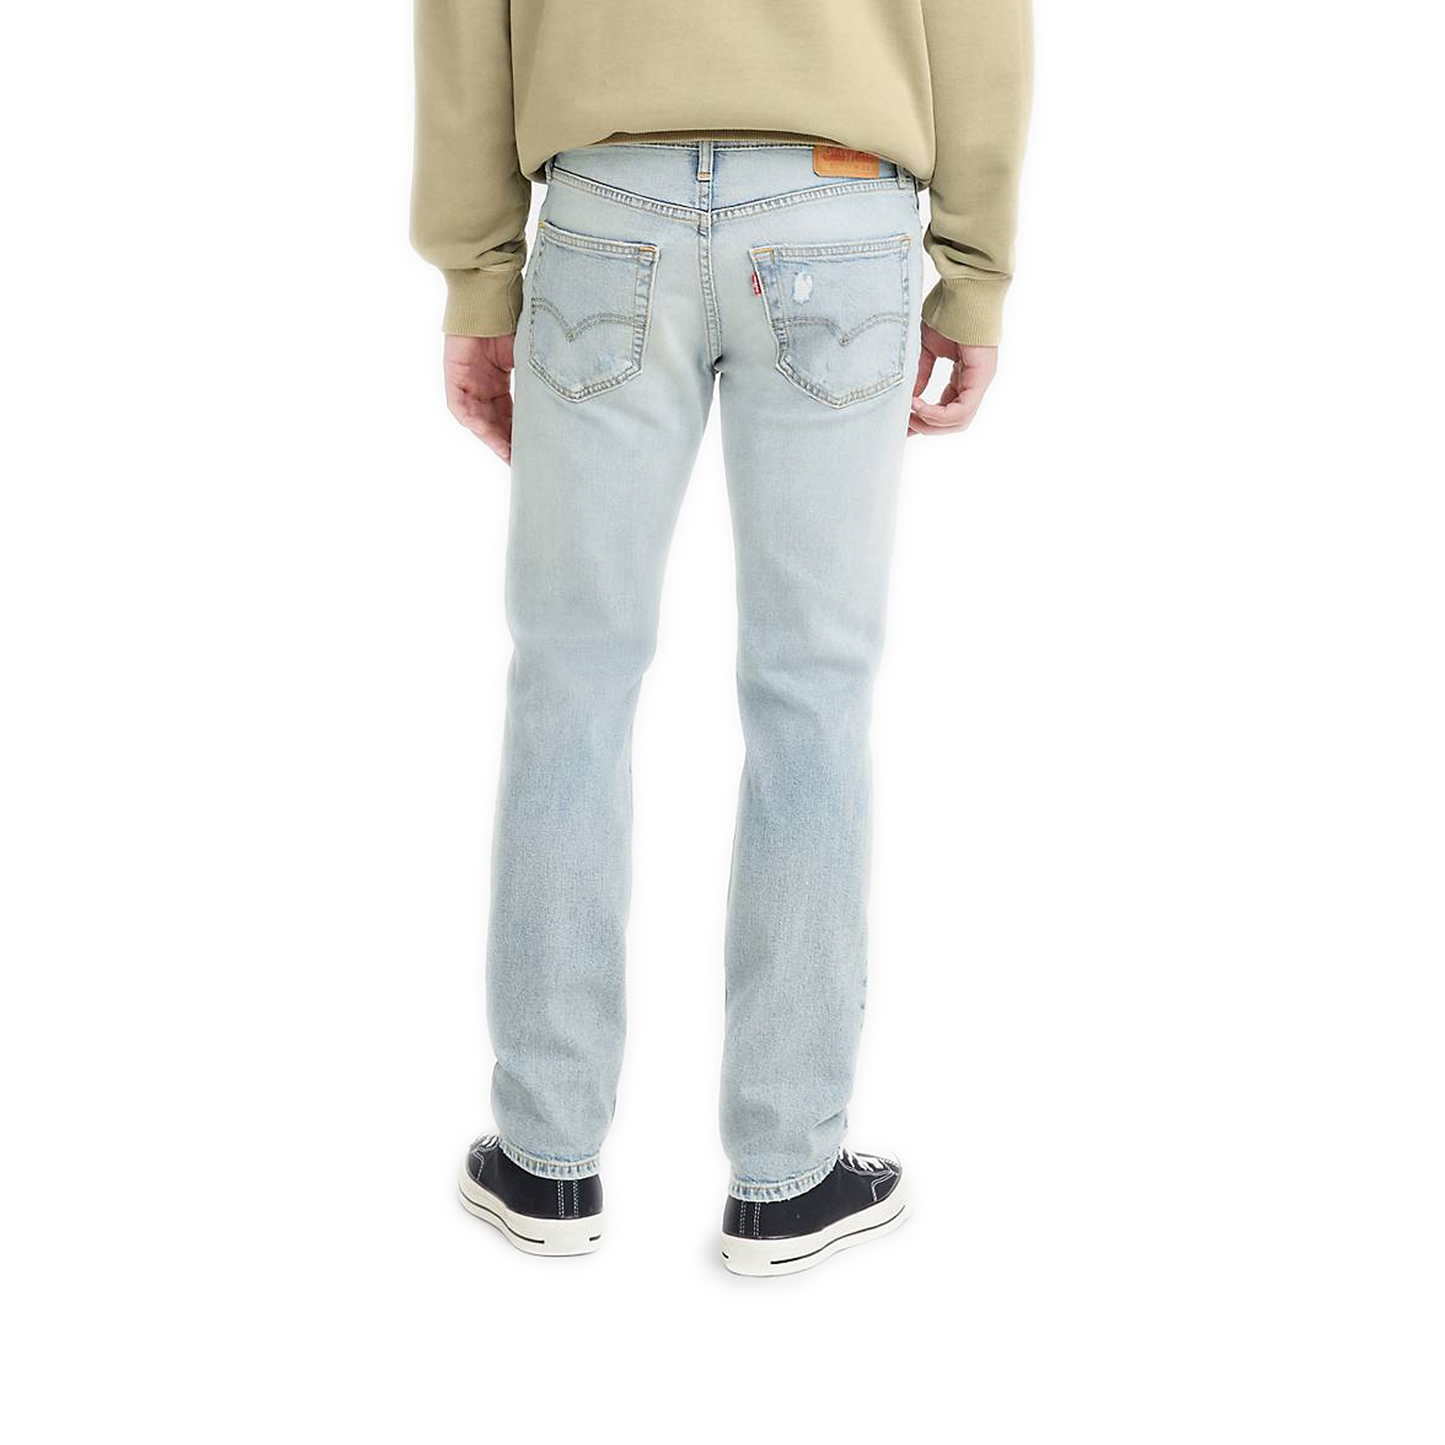 Men's Levi's 511 Slim Fit Jeans - Medium Wash